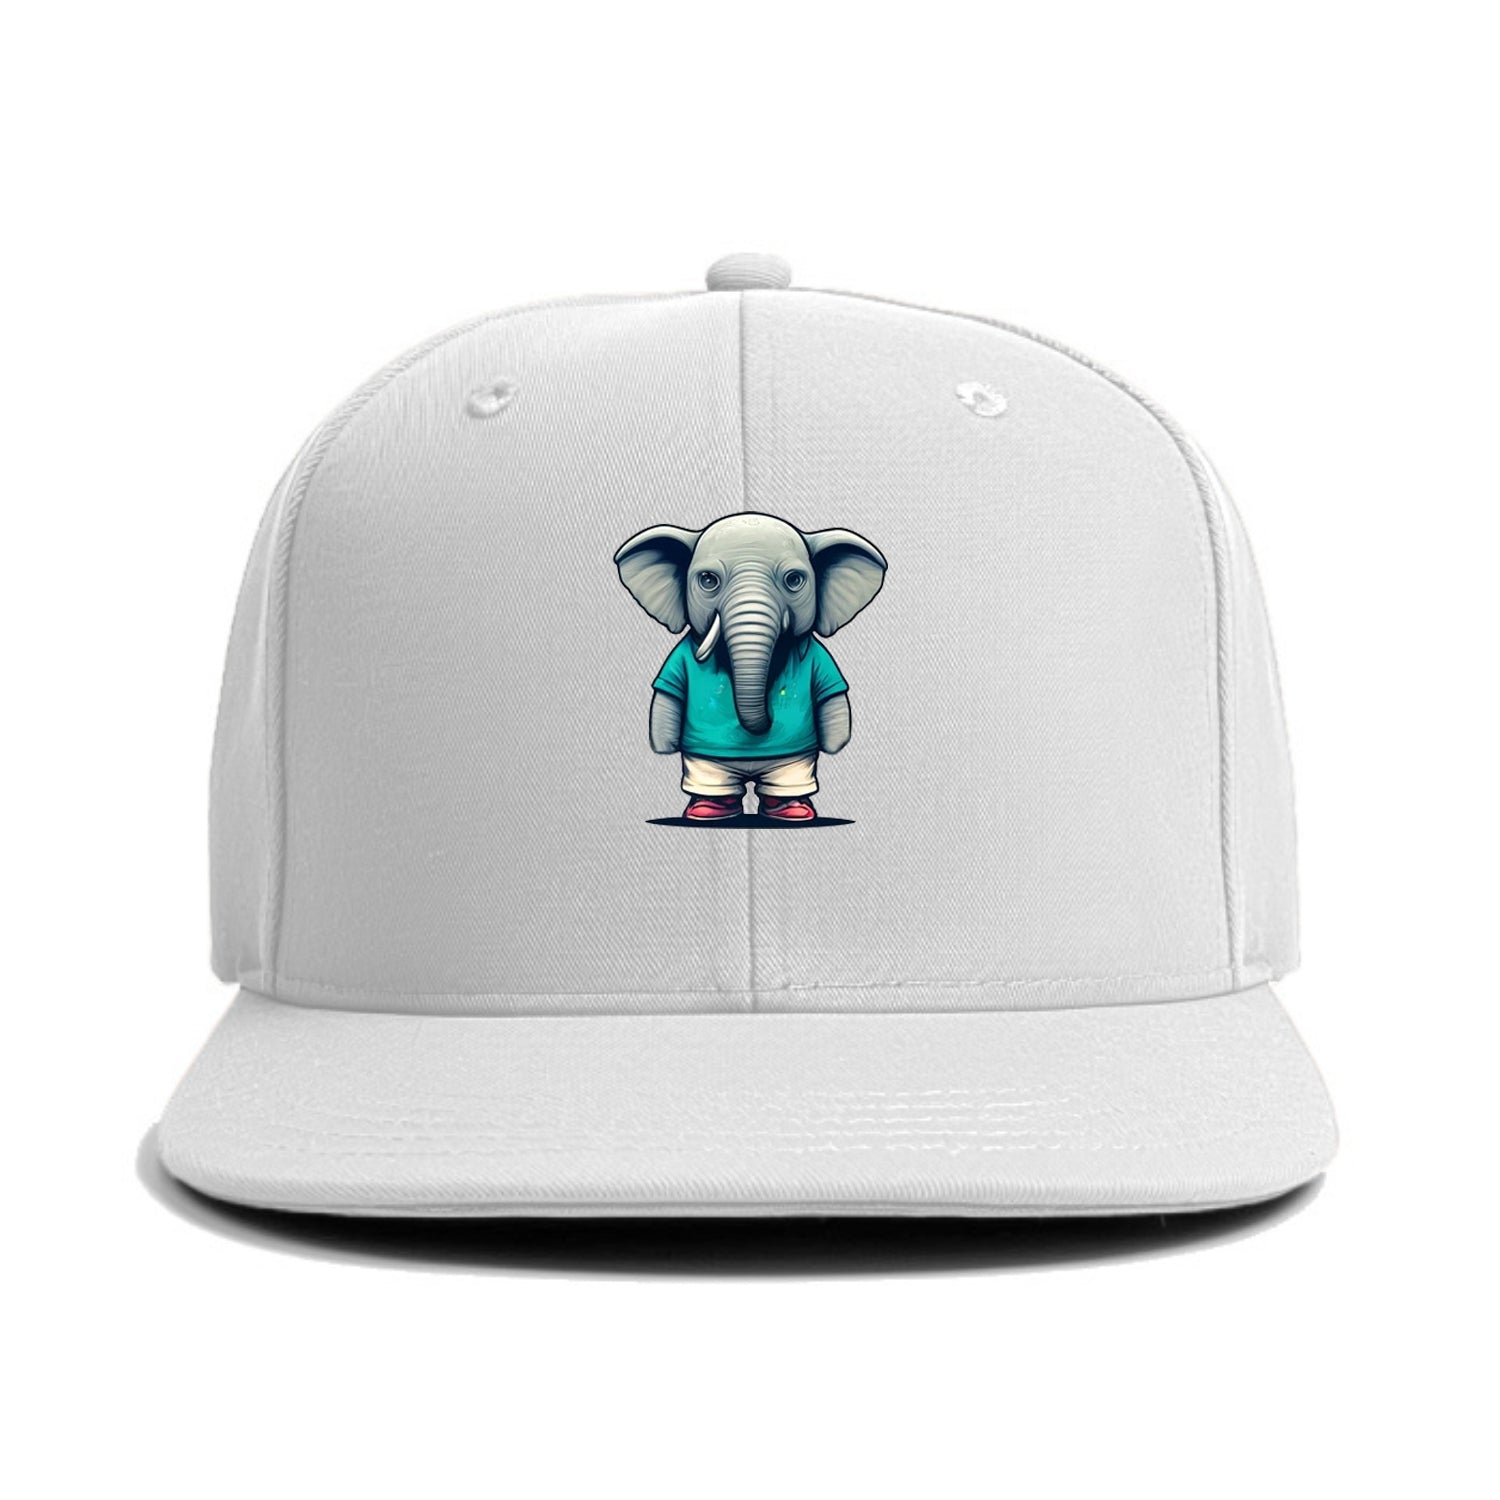 bored elephant 6 Hat